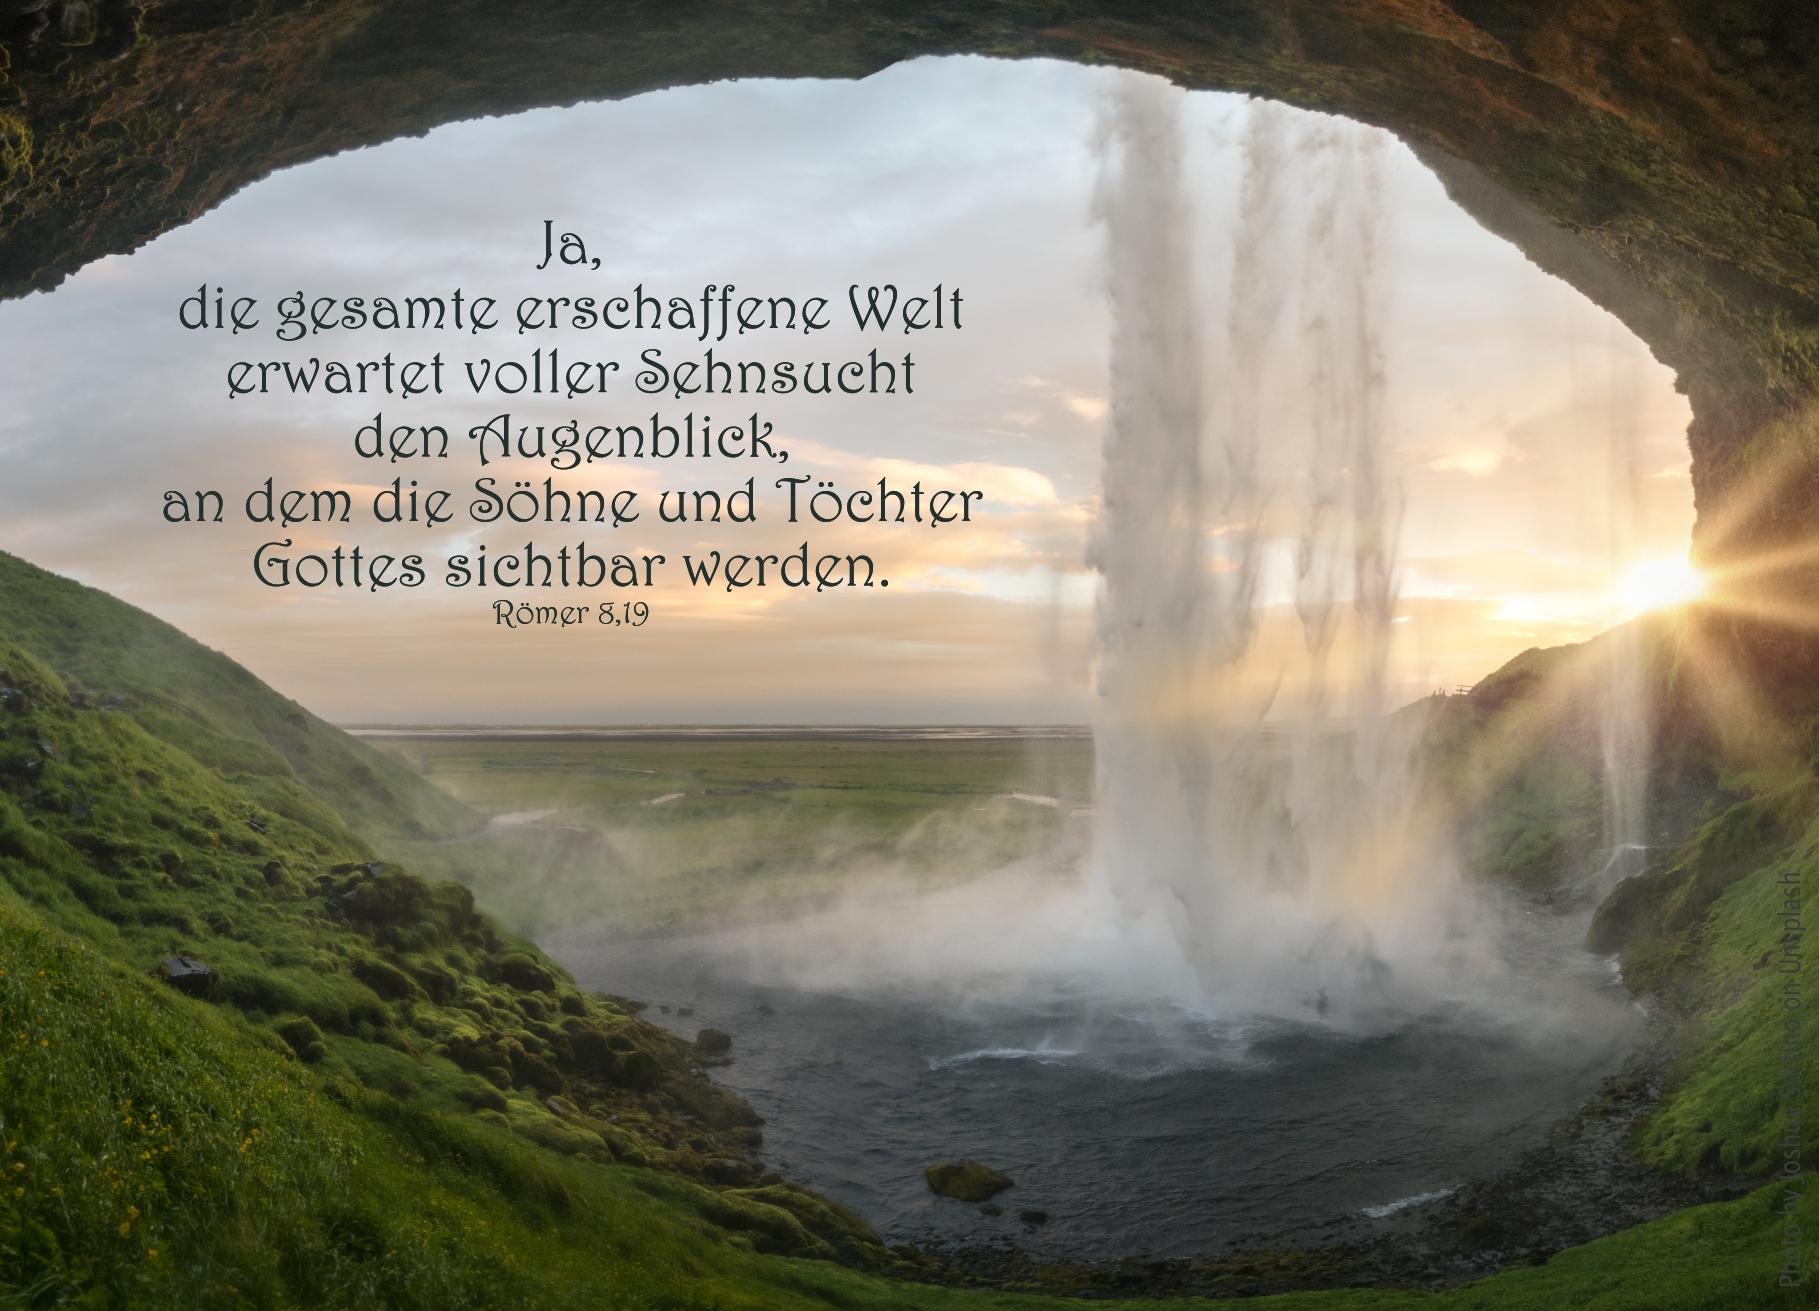 alt="blick_aus_hoehle_auf_wasserfall_erwartet_bibelhoerbuch_die_allumfassende_hoffnung"